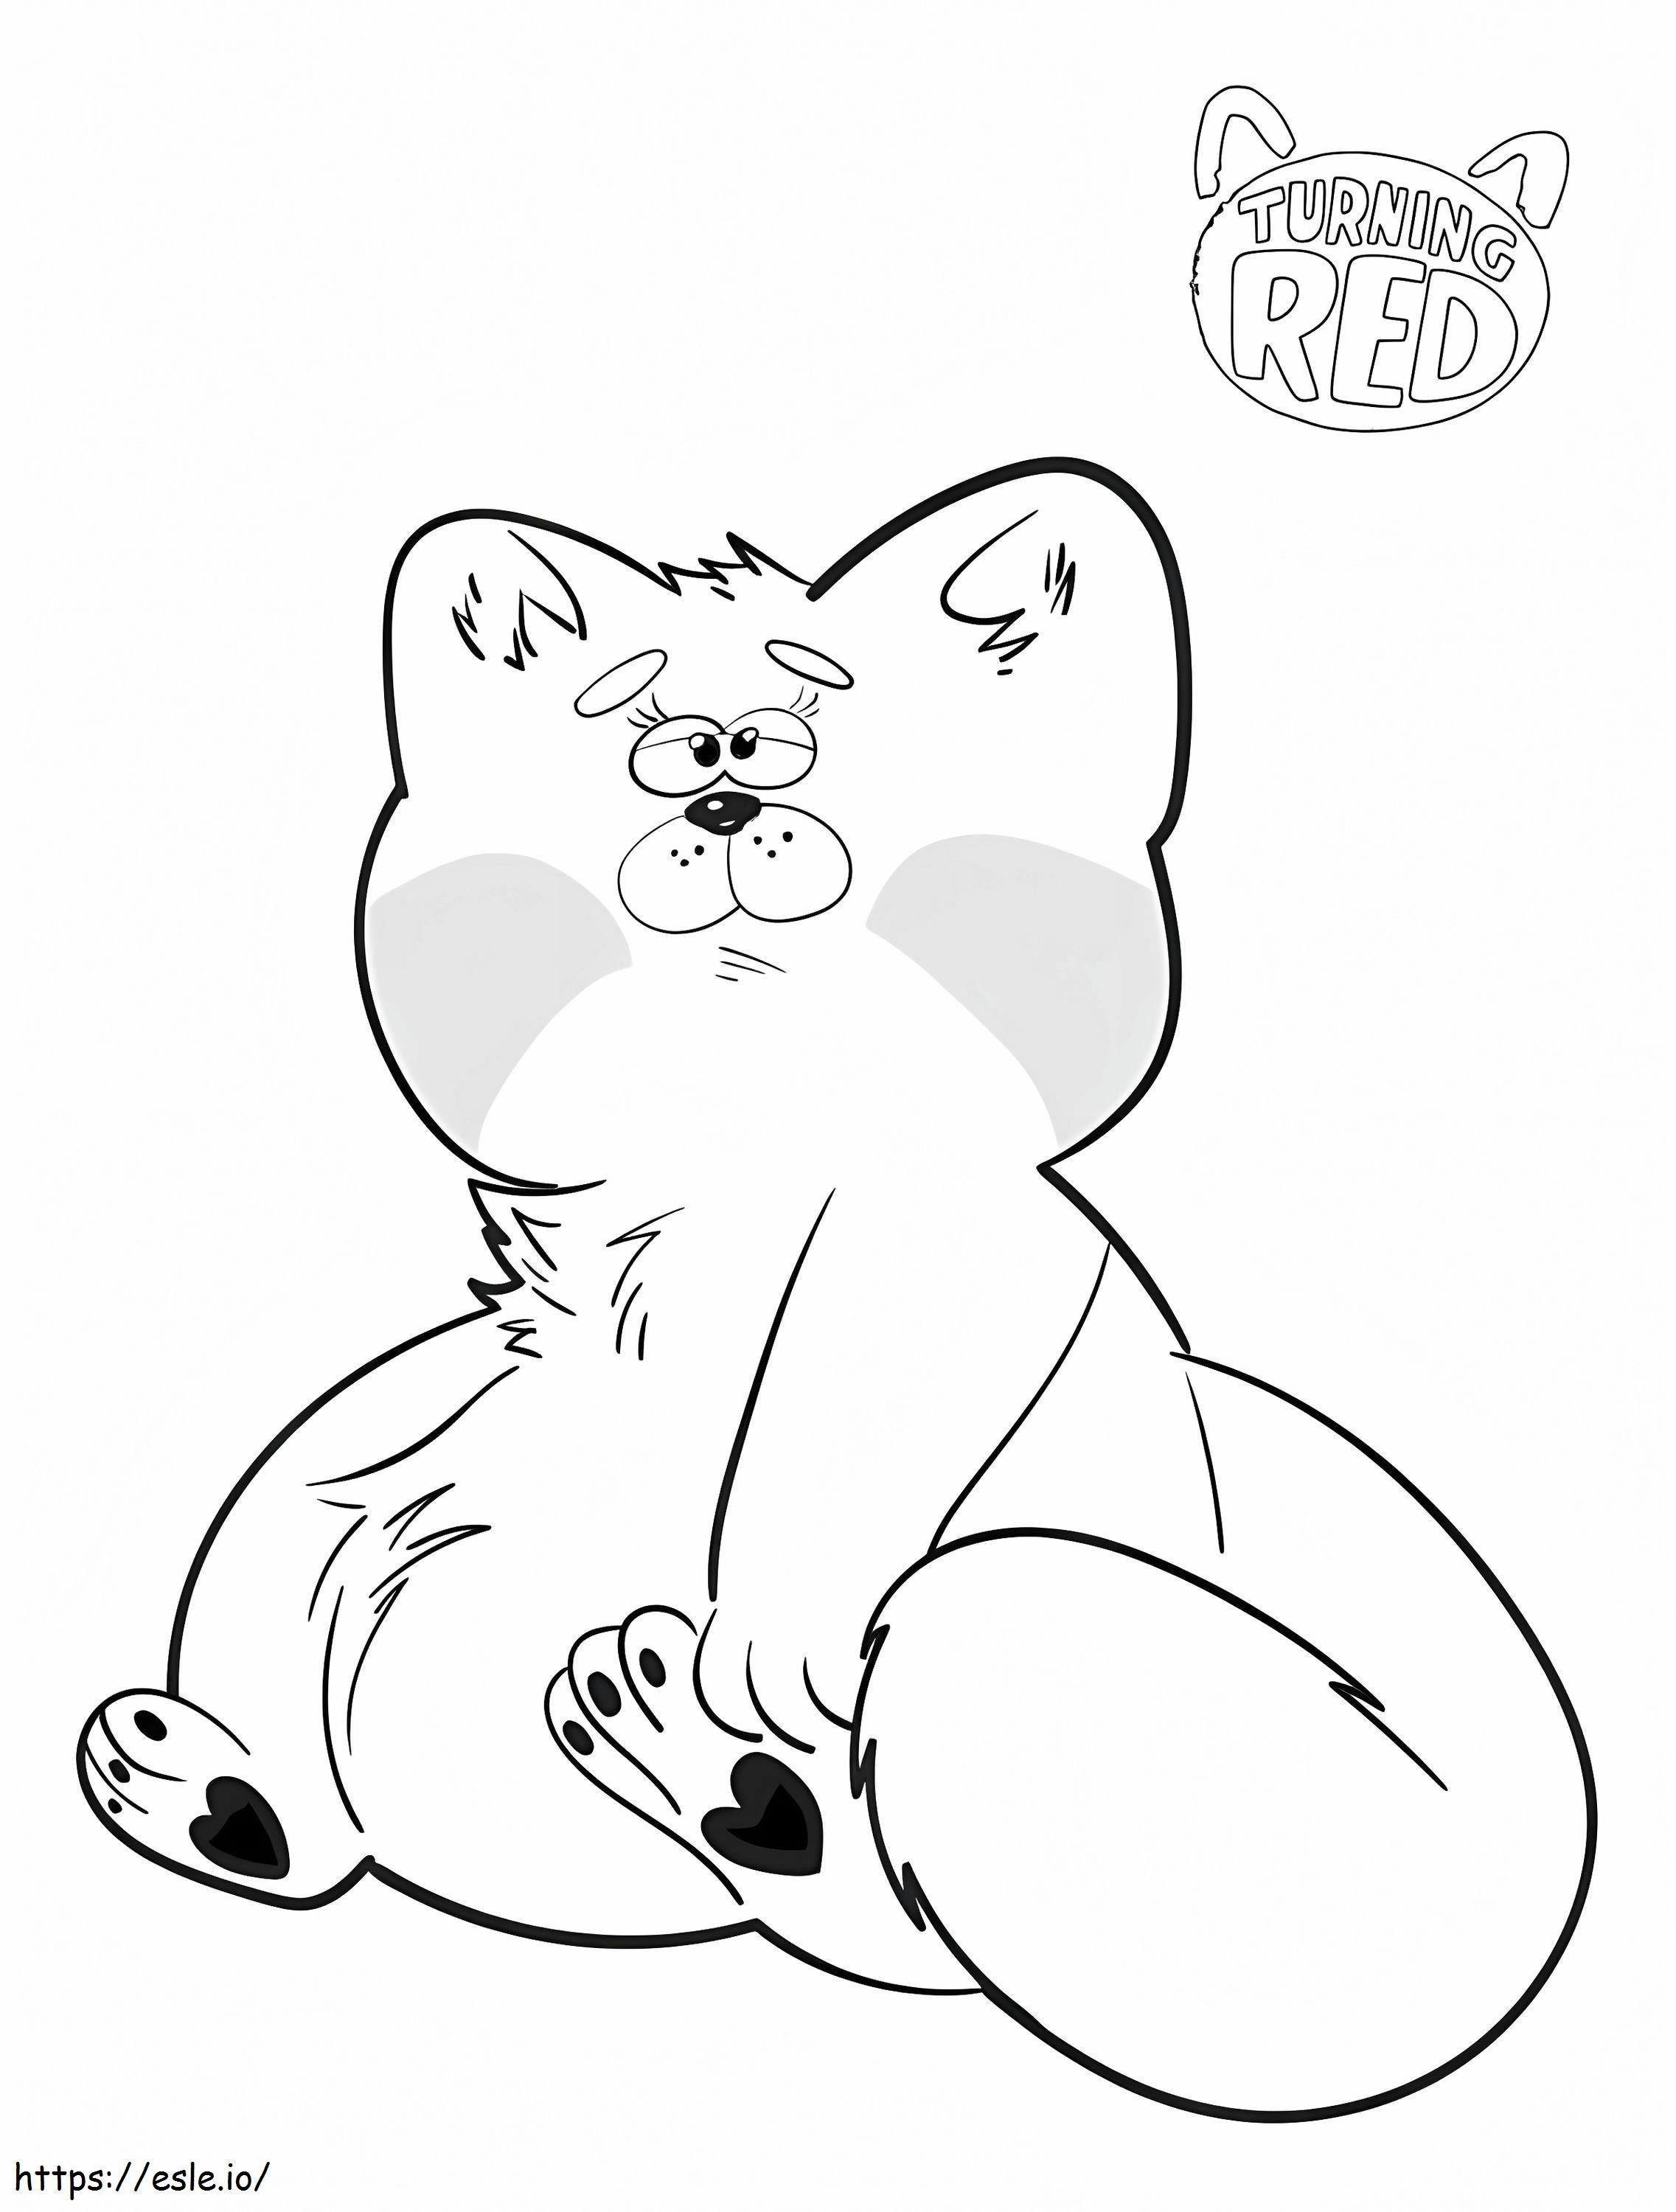 Mei Lee Rode Panda kleurplaat kleurplaat